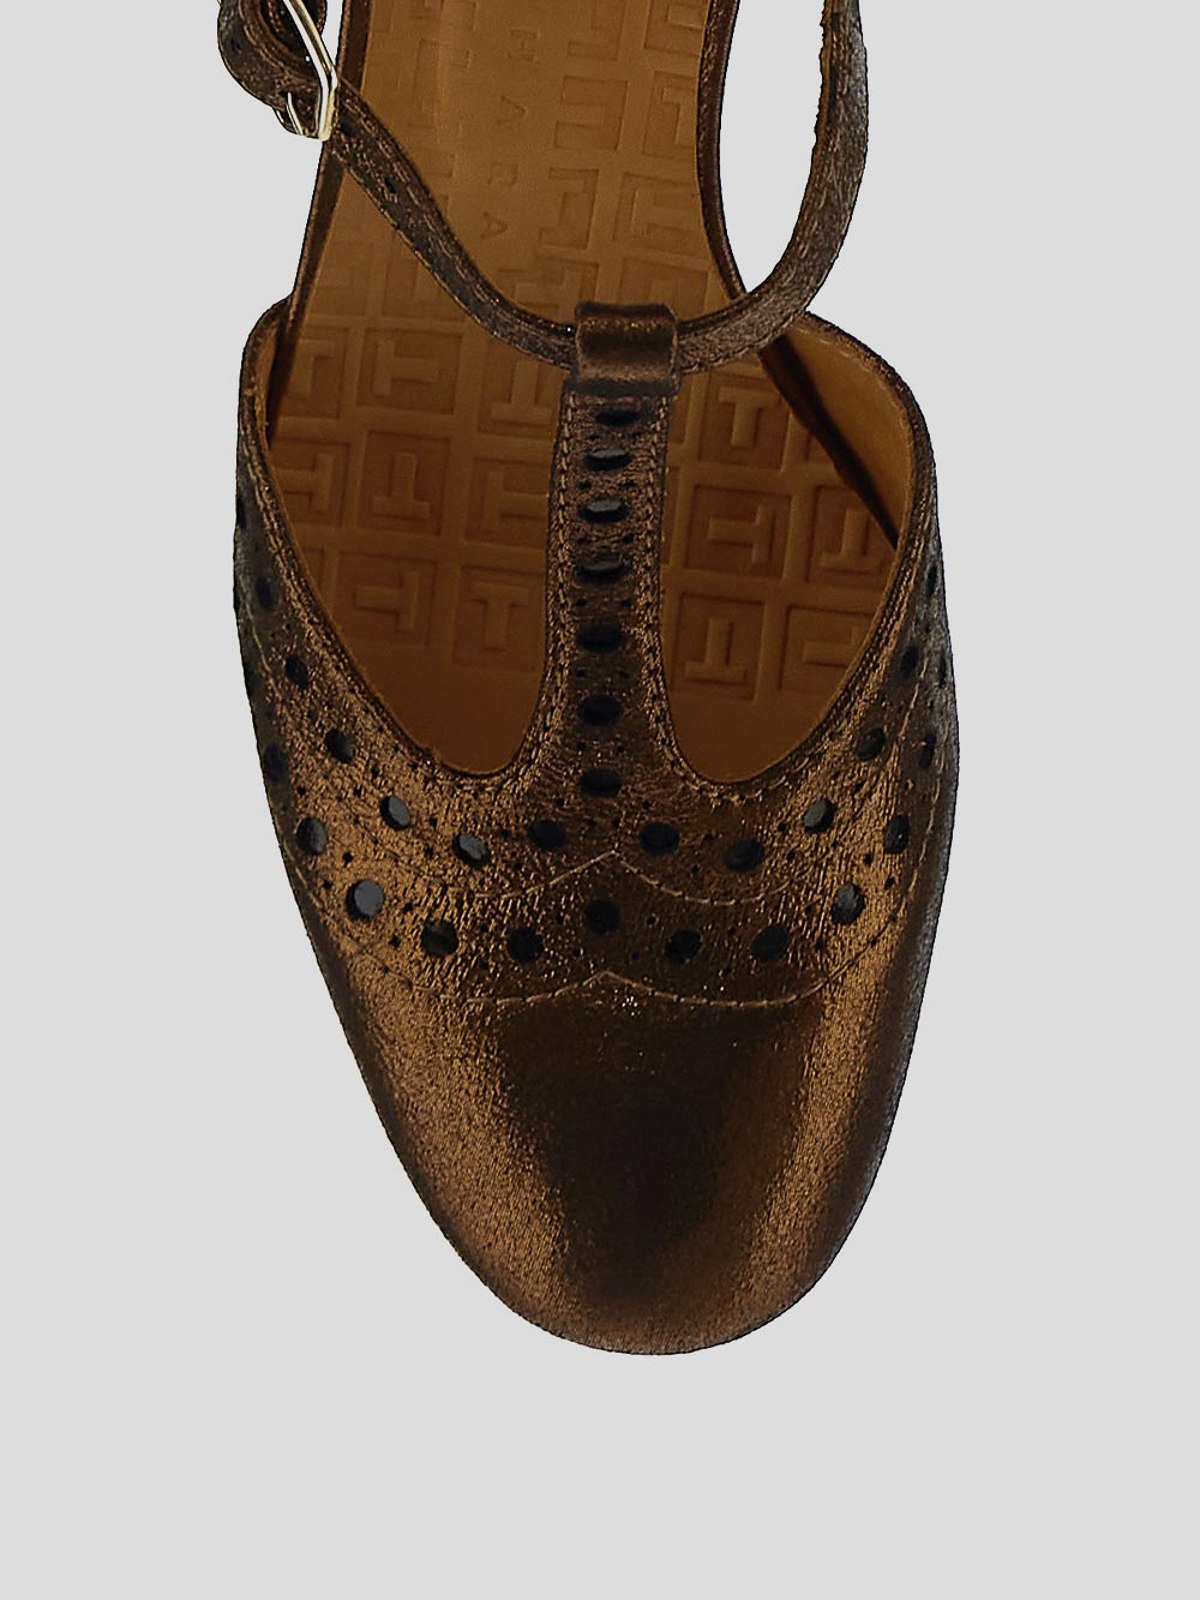 Shop Chie Mihara Zapatos De Salón - Bronce In Bronze